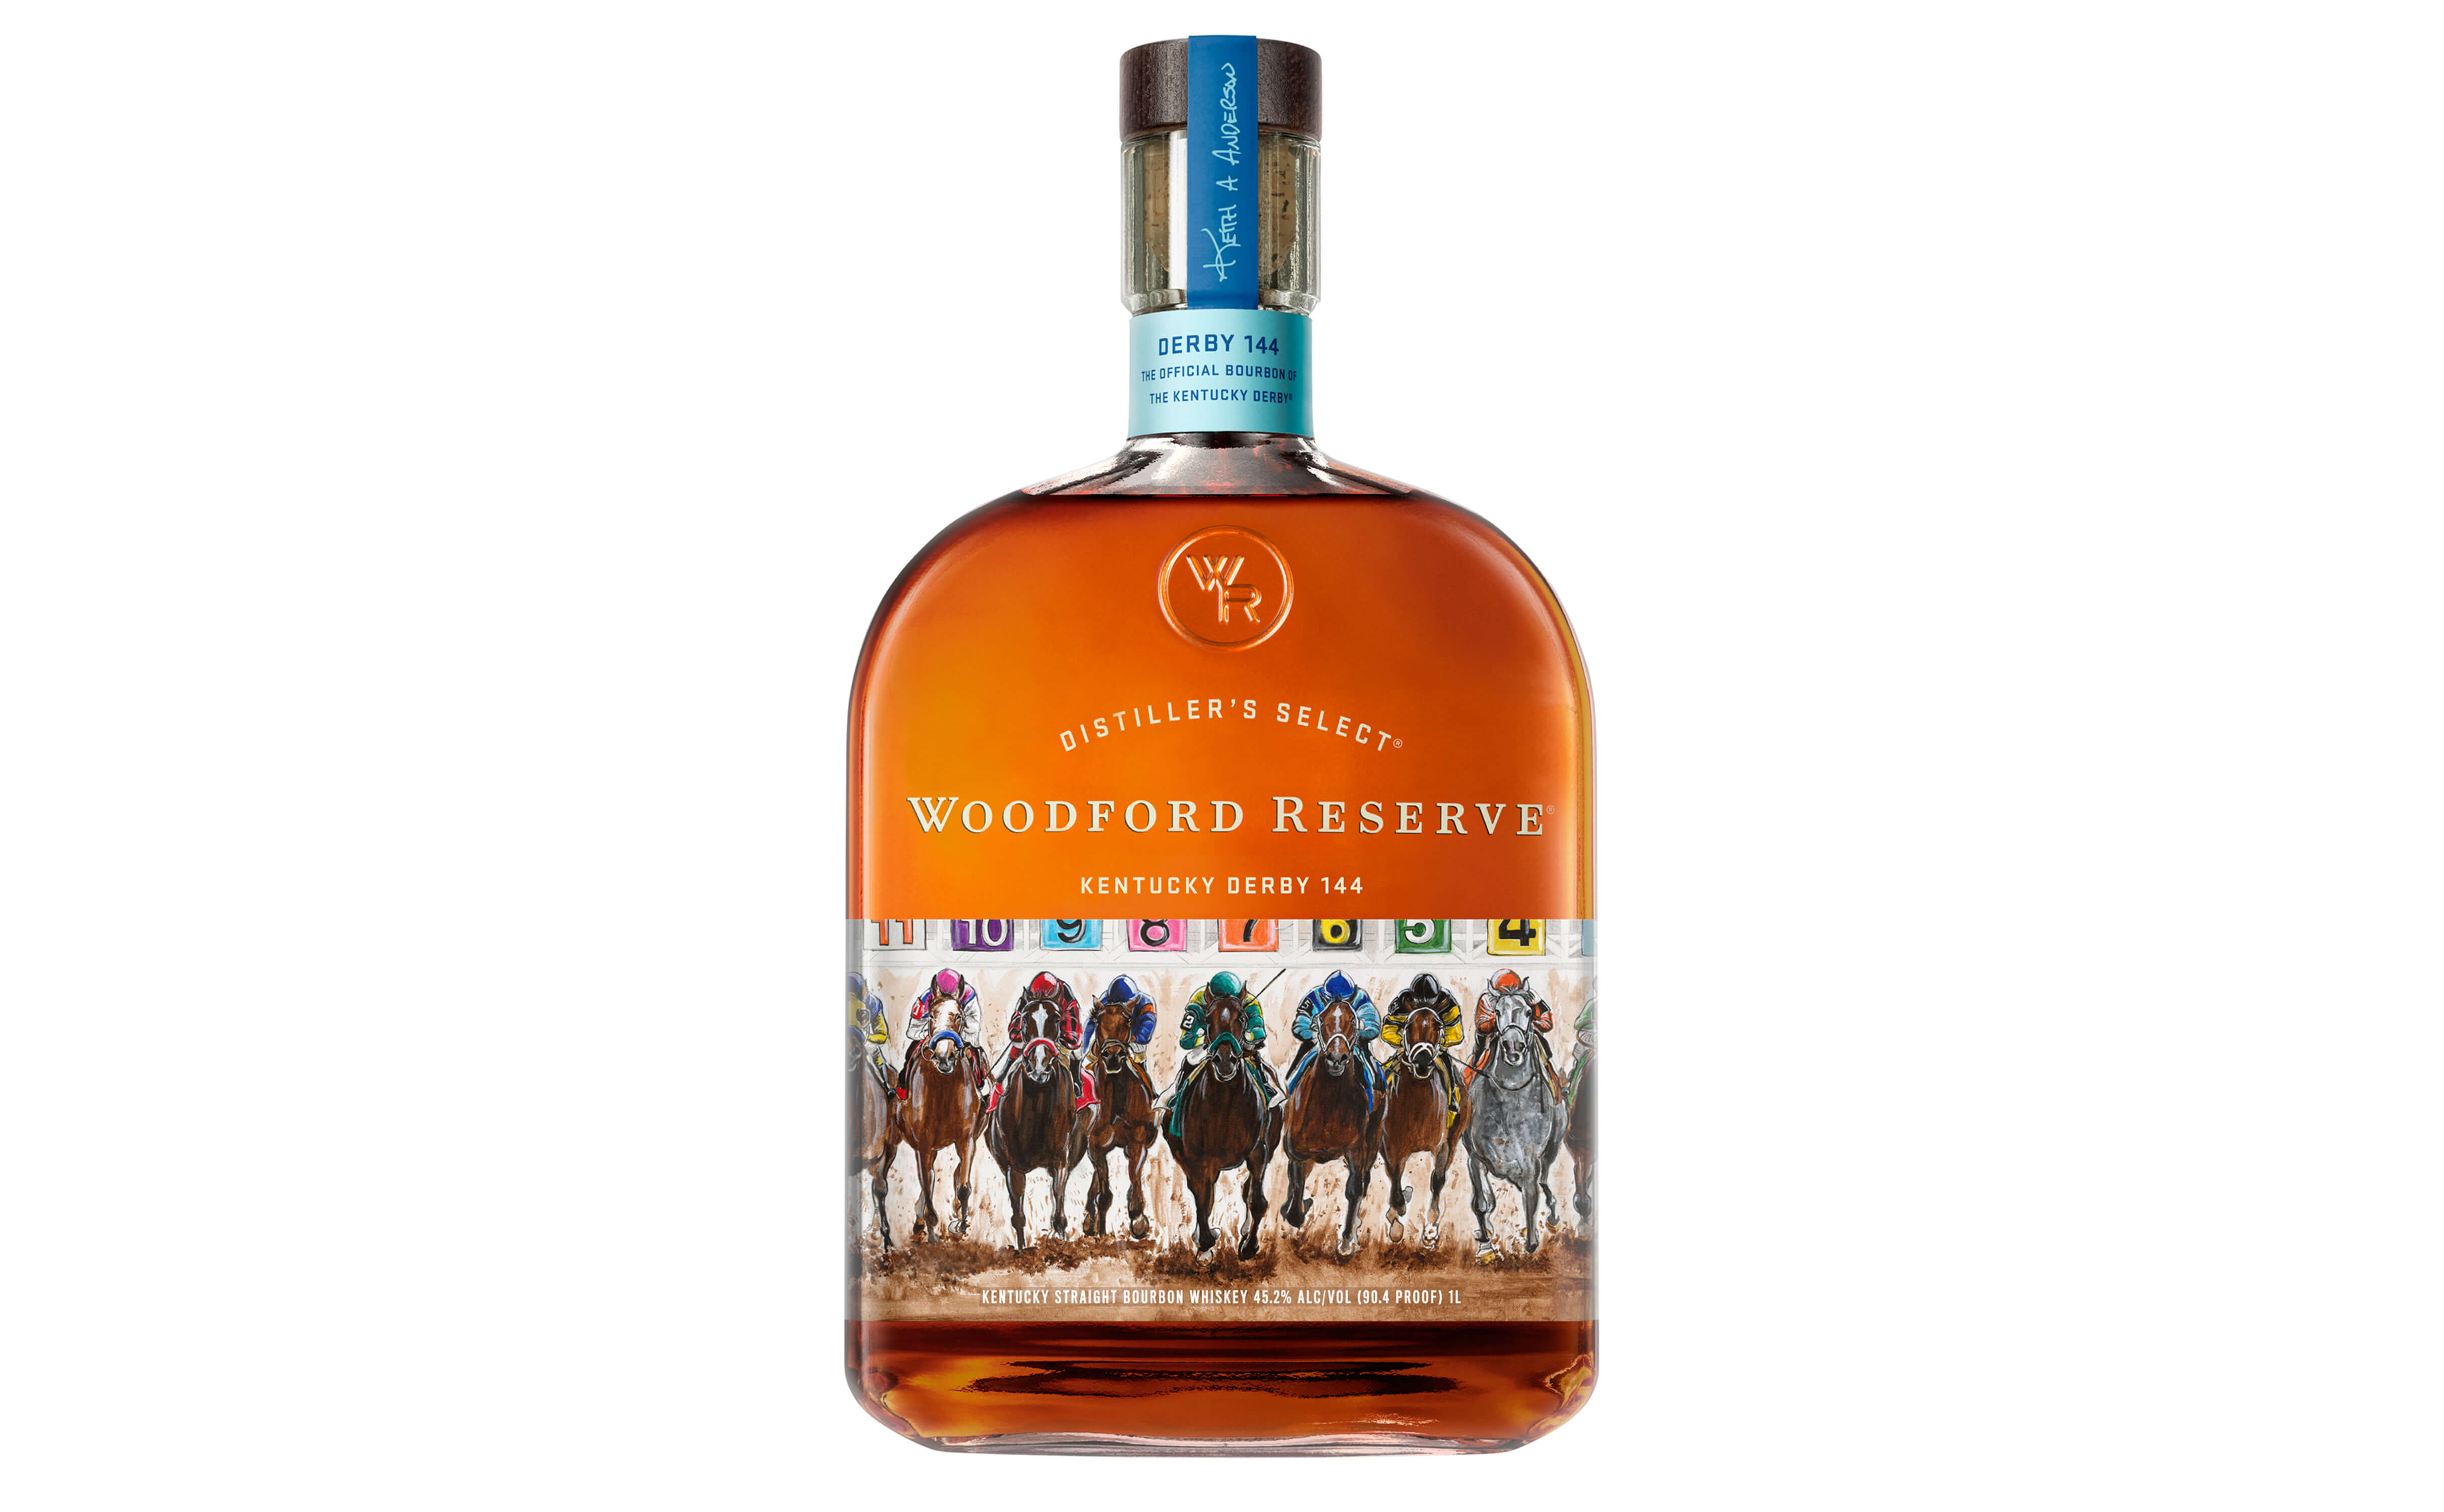 Woodford Reserve 2018 Kentucky Derby bottle